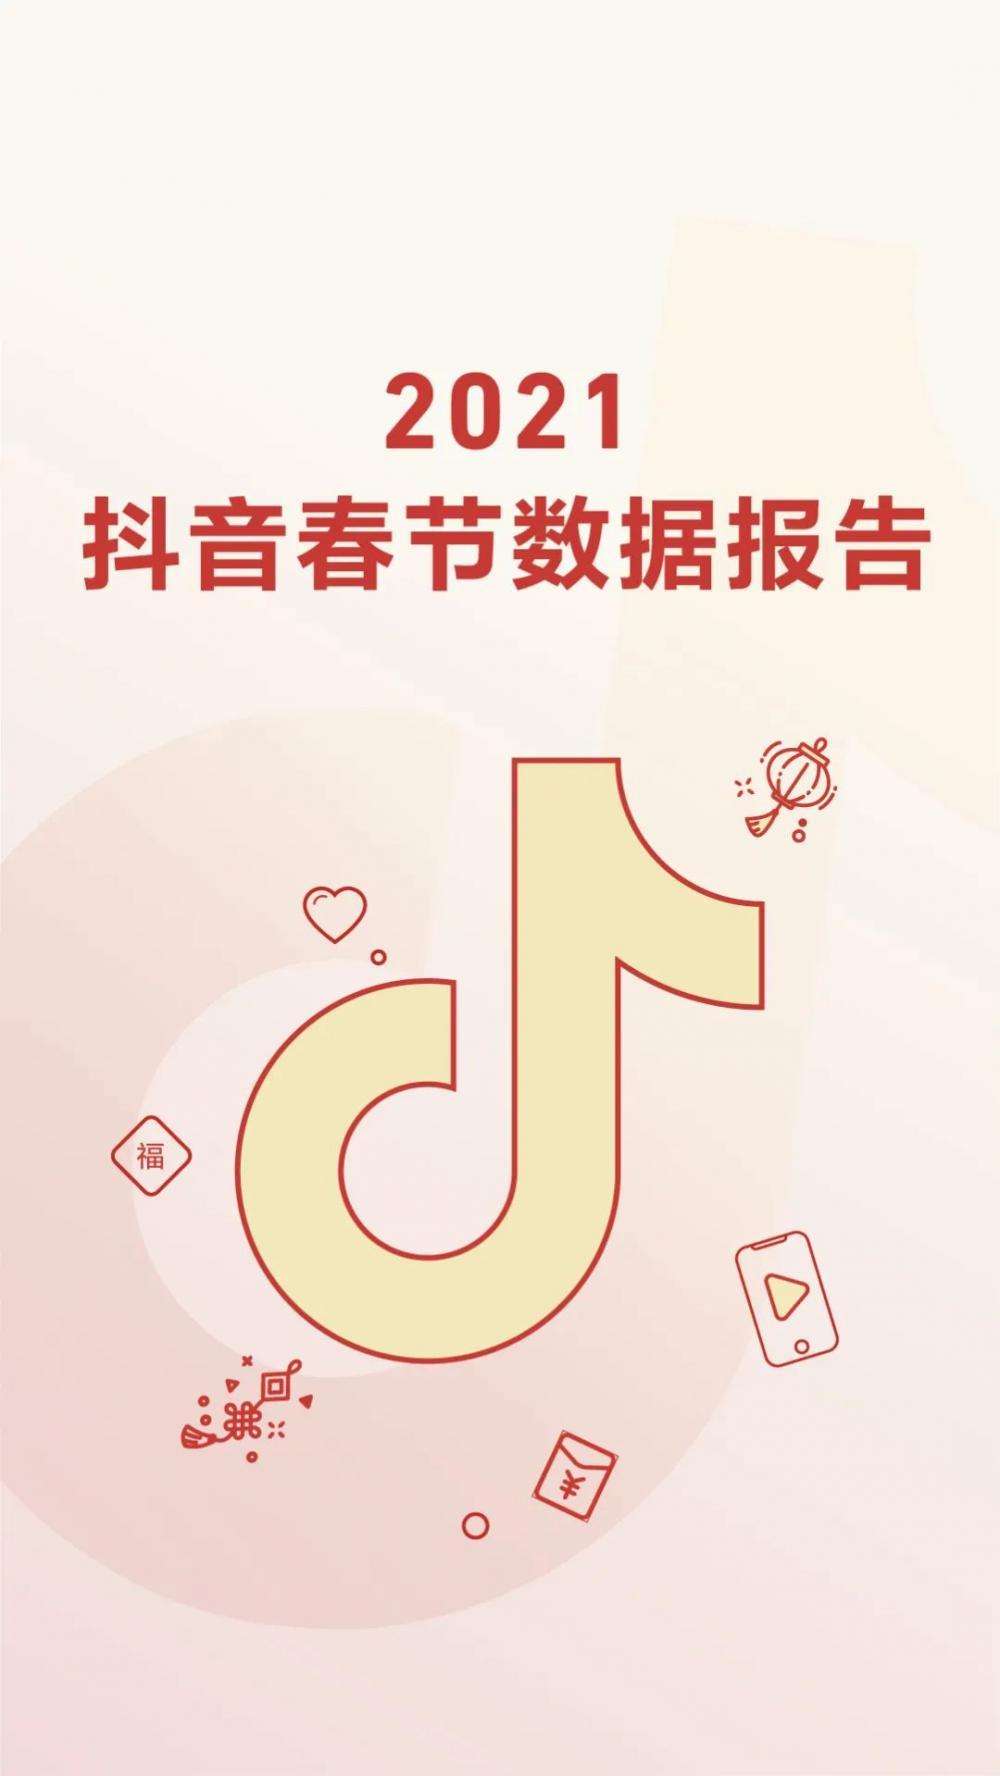 2021抖音春节数据报告(完整版)